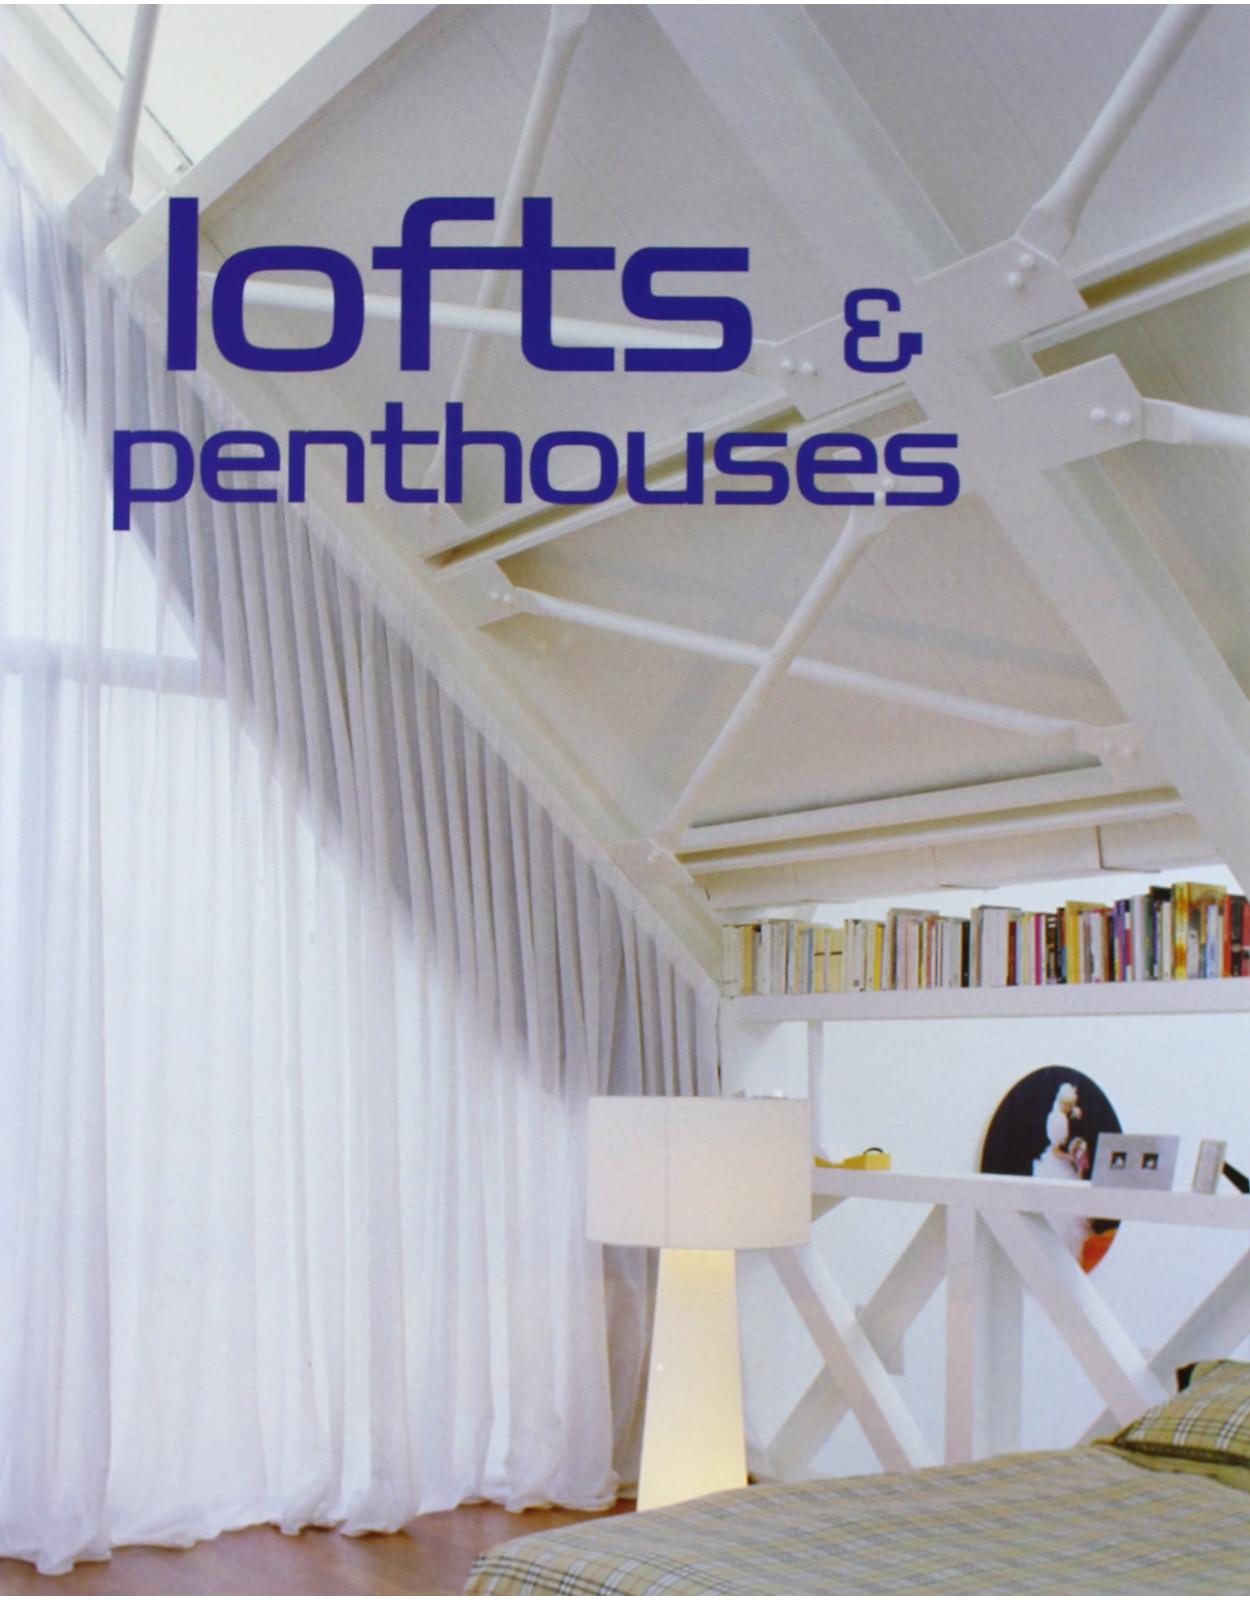 Lofts & Penthouses